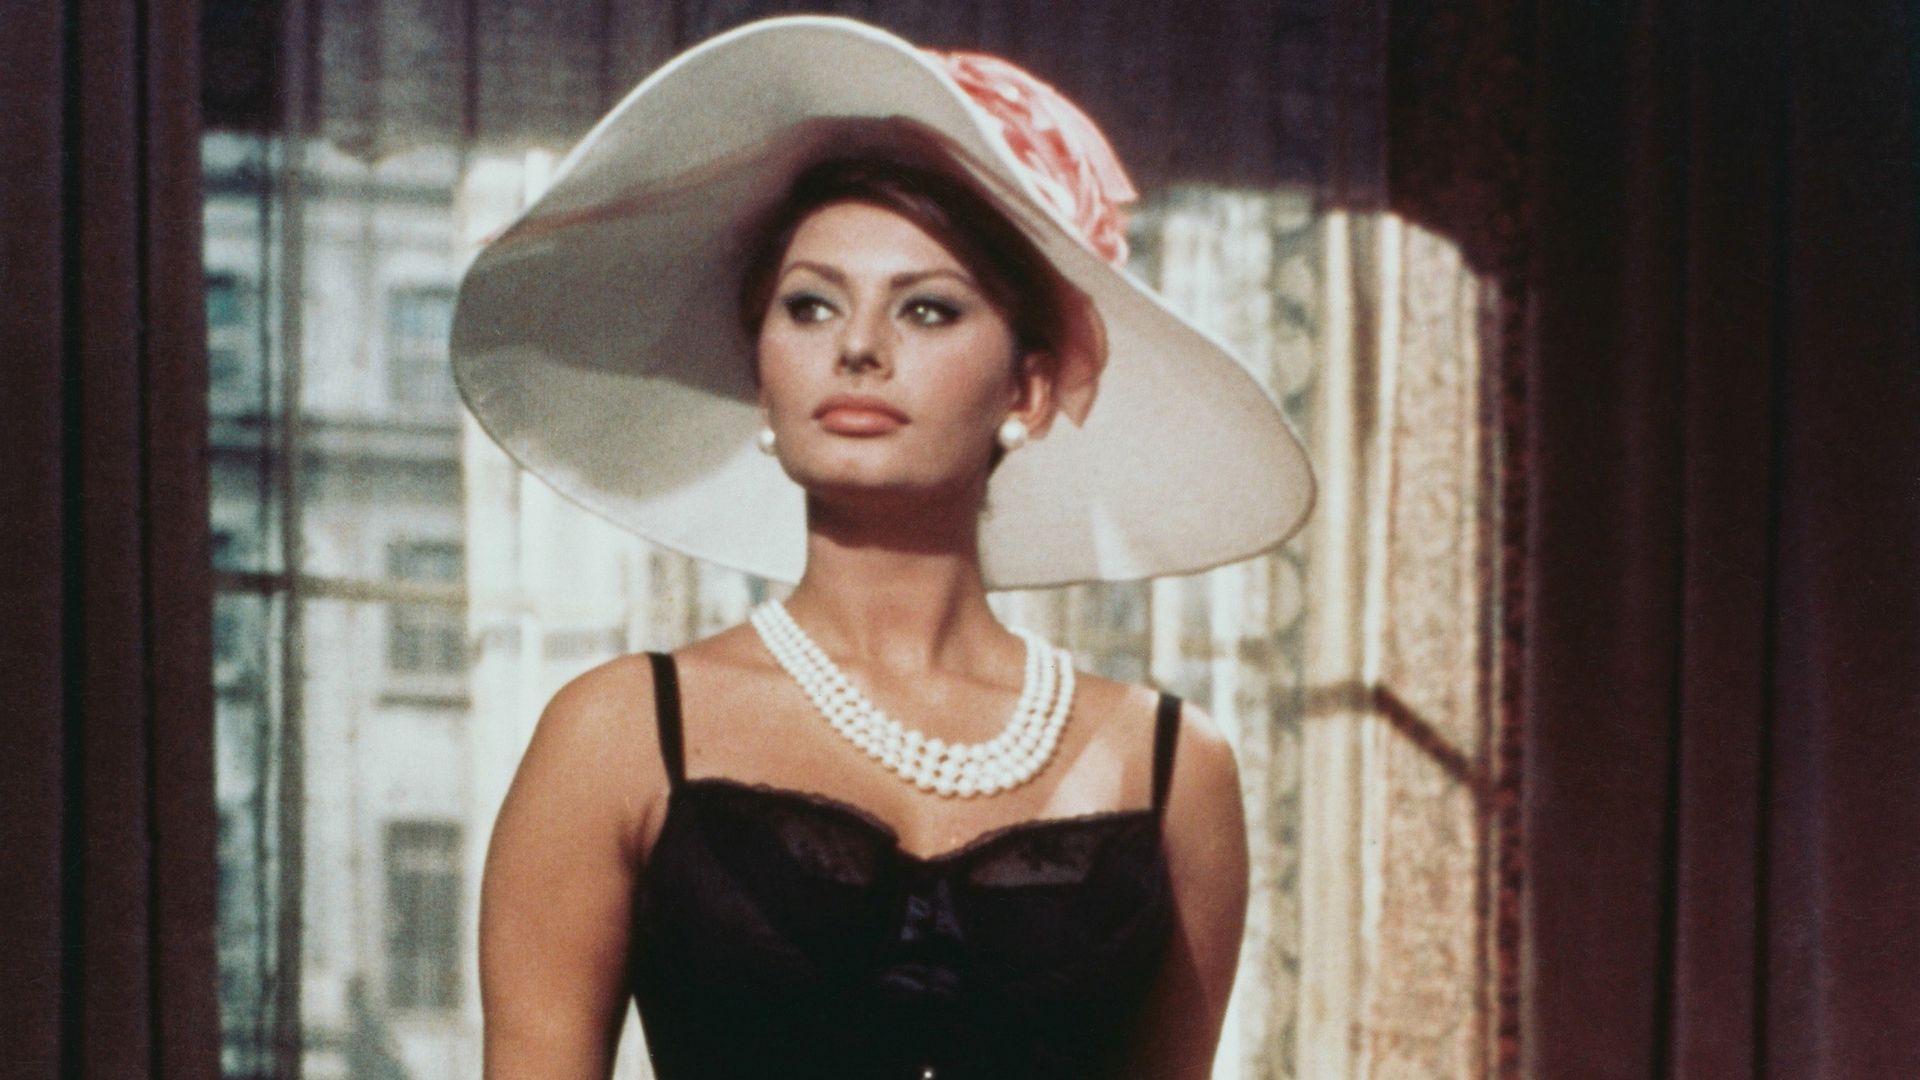 Sophia Loren wearing a black corset in 'The Millionairess' 